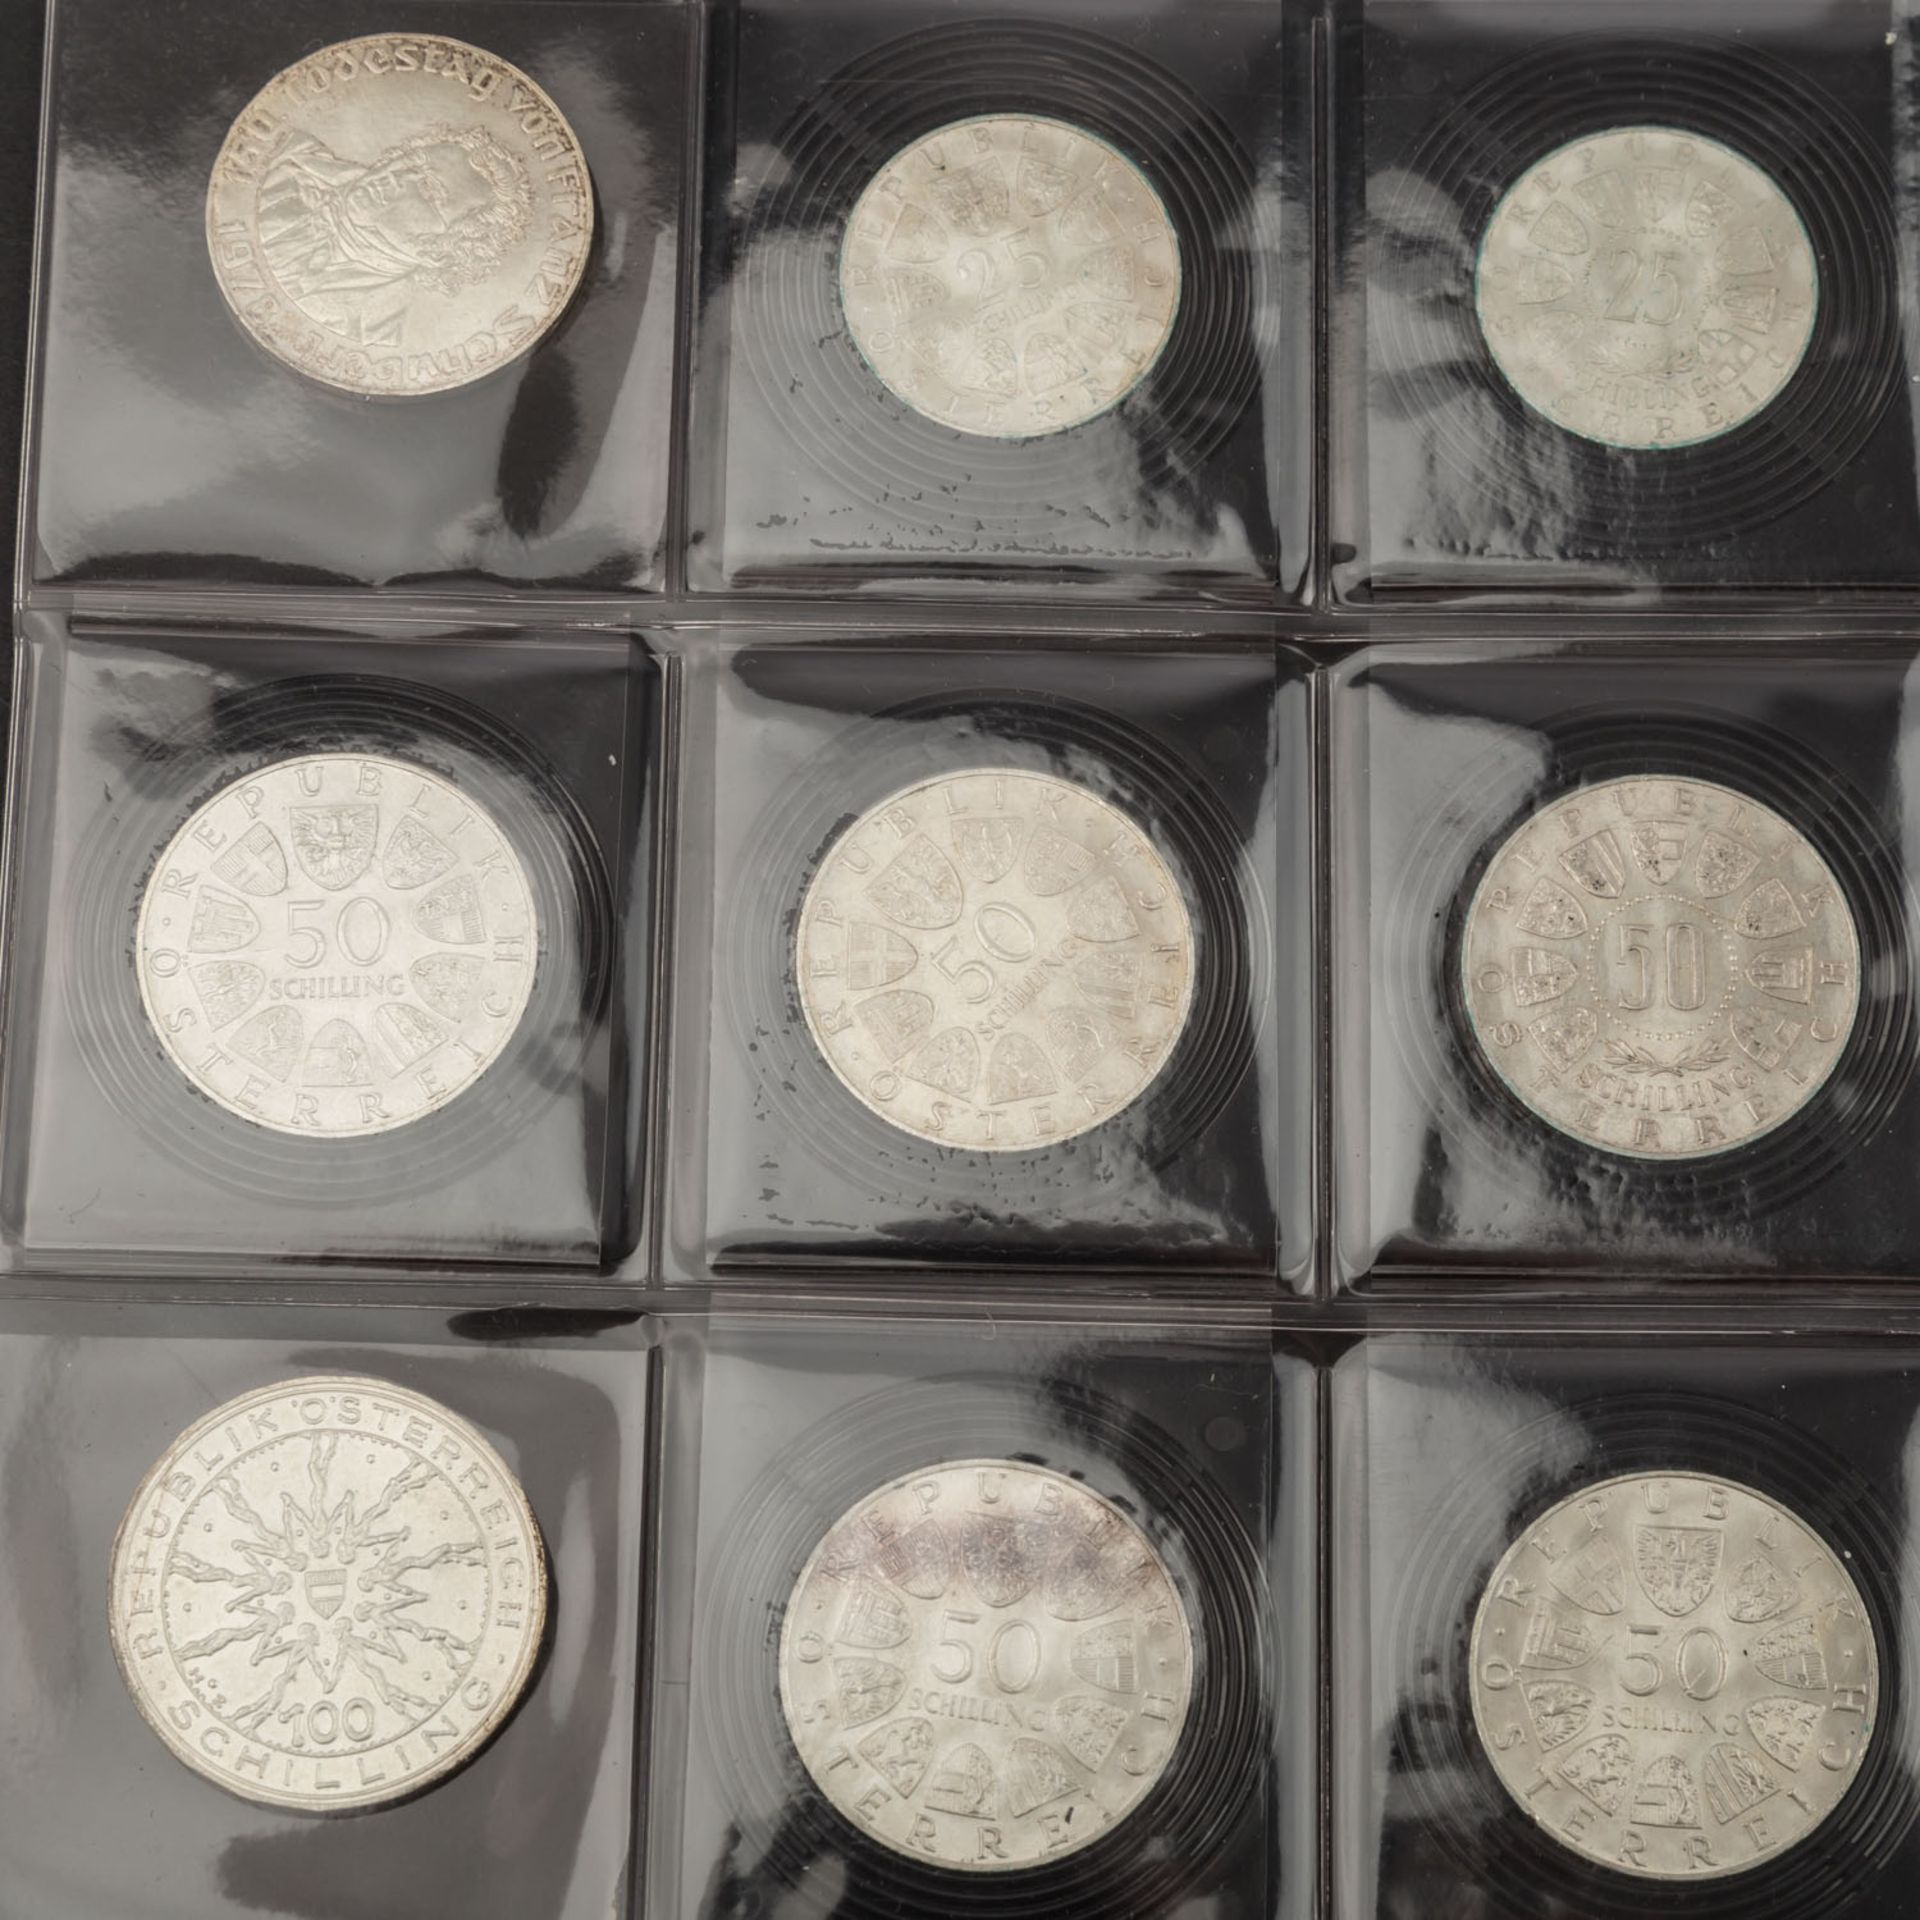 Restsammlung mit etwas Gold - Album mit modernen Münzen,20 Mark Preussen 1908, 2,5 Ps. Mexiko 1945 - Bild 3 aus 6